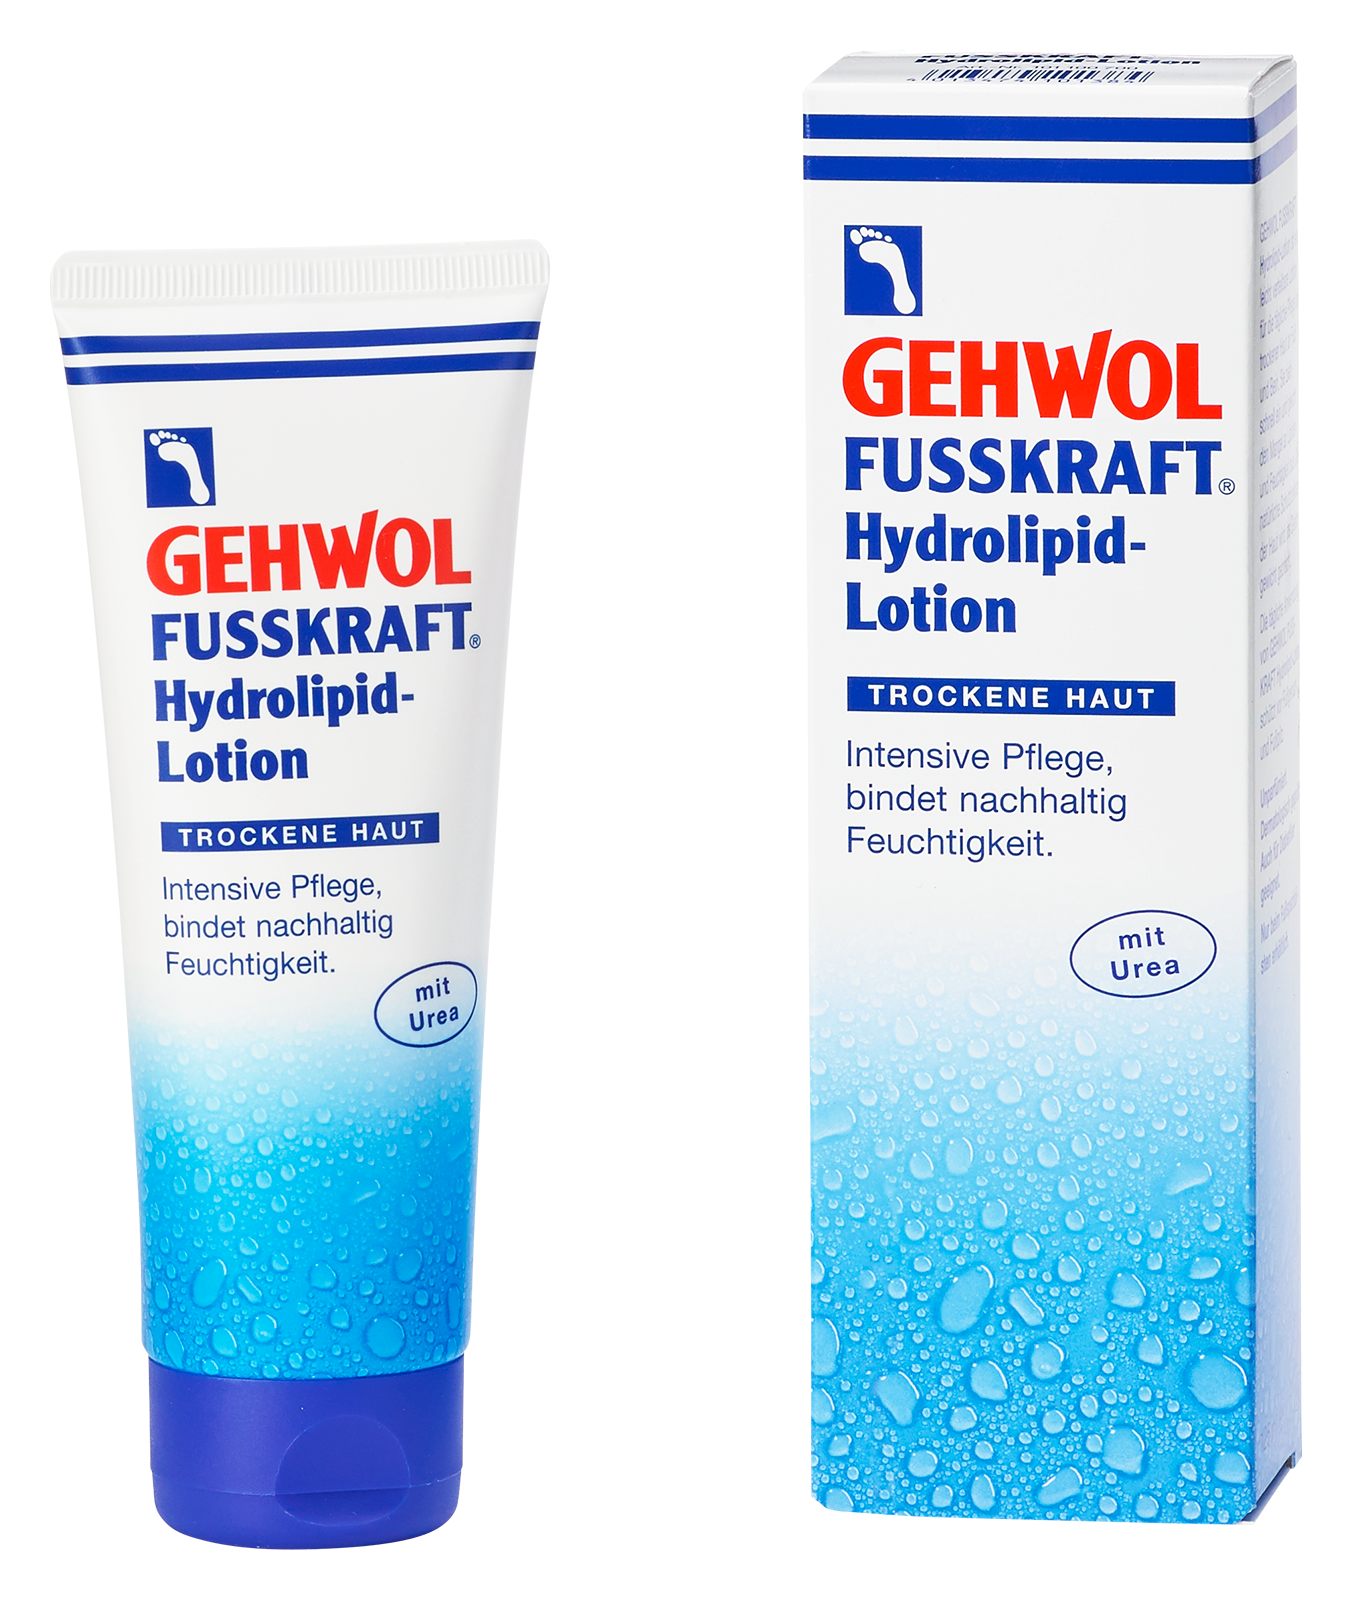 GEHWOL FUSSKRAFT Hydrolipid-Lotion 125 ml